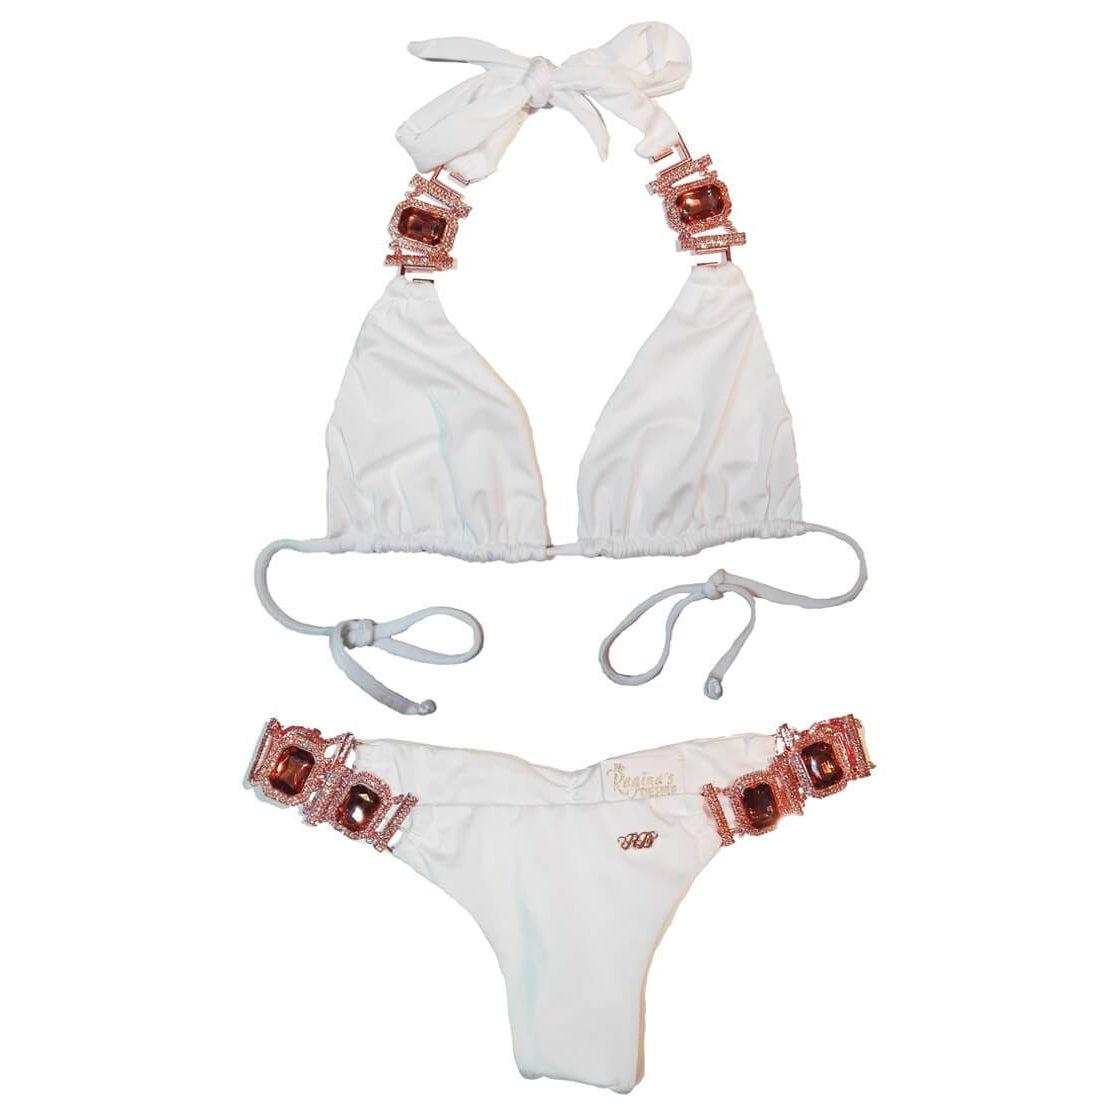 Tina Halter Top & Skimpy Bottom - White-Sports & Entertainment - Swimming - Bikinis Set-NXTLVLNYC